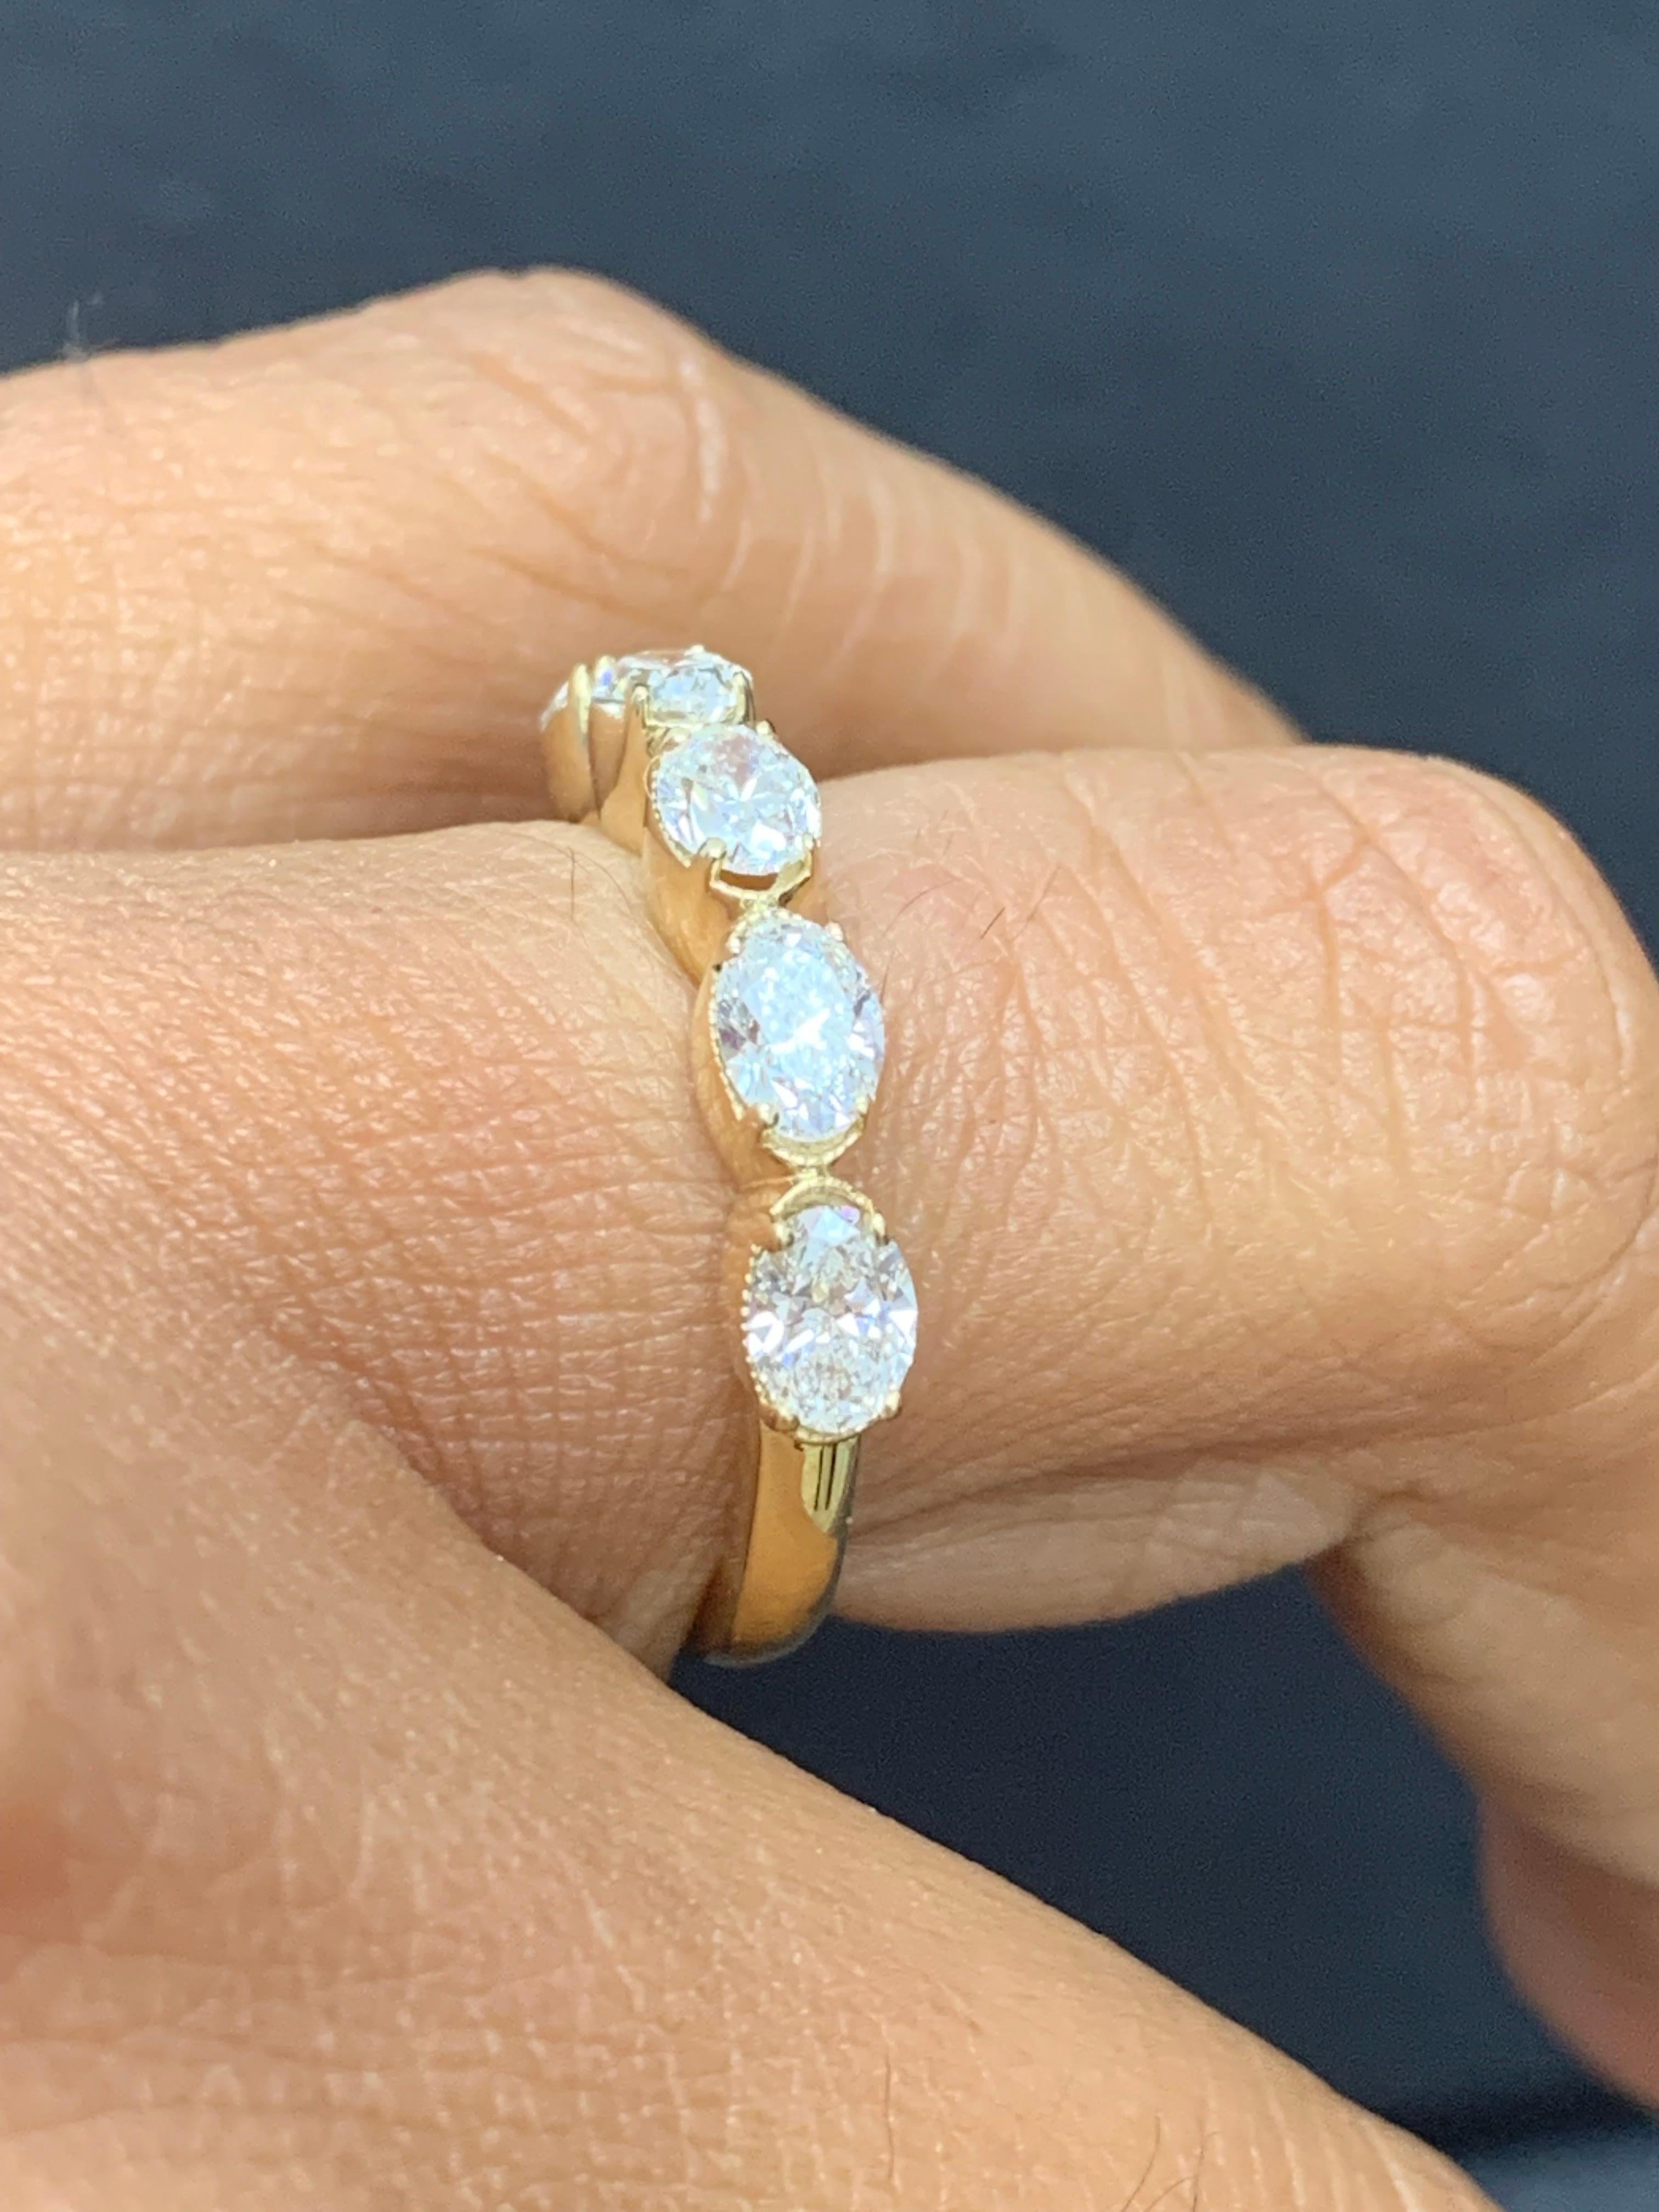 1.25 carat oval diamond ring